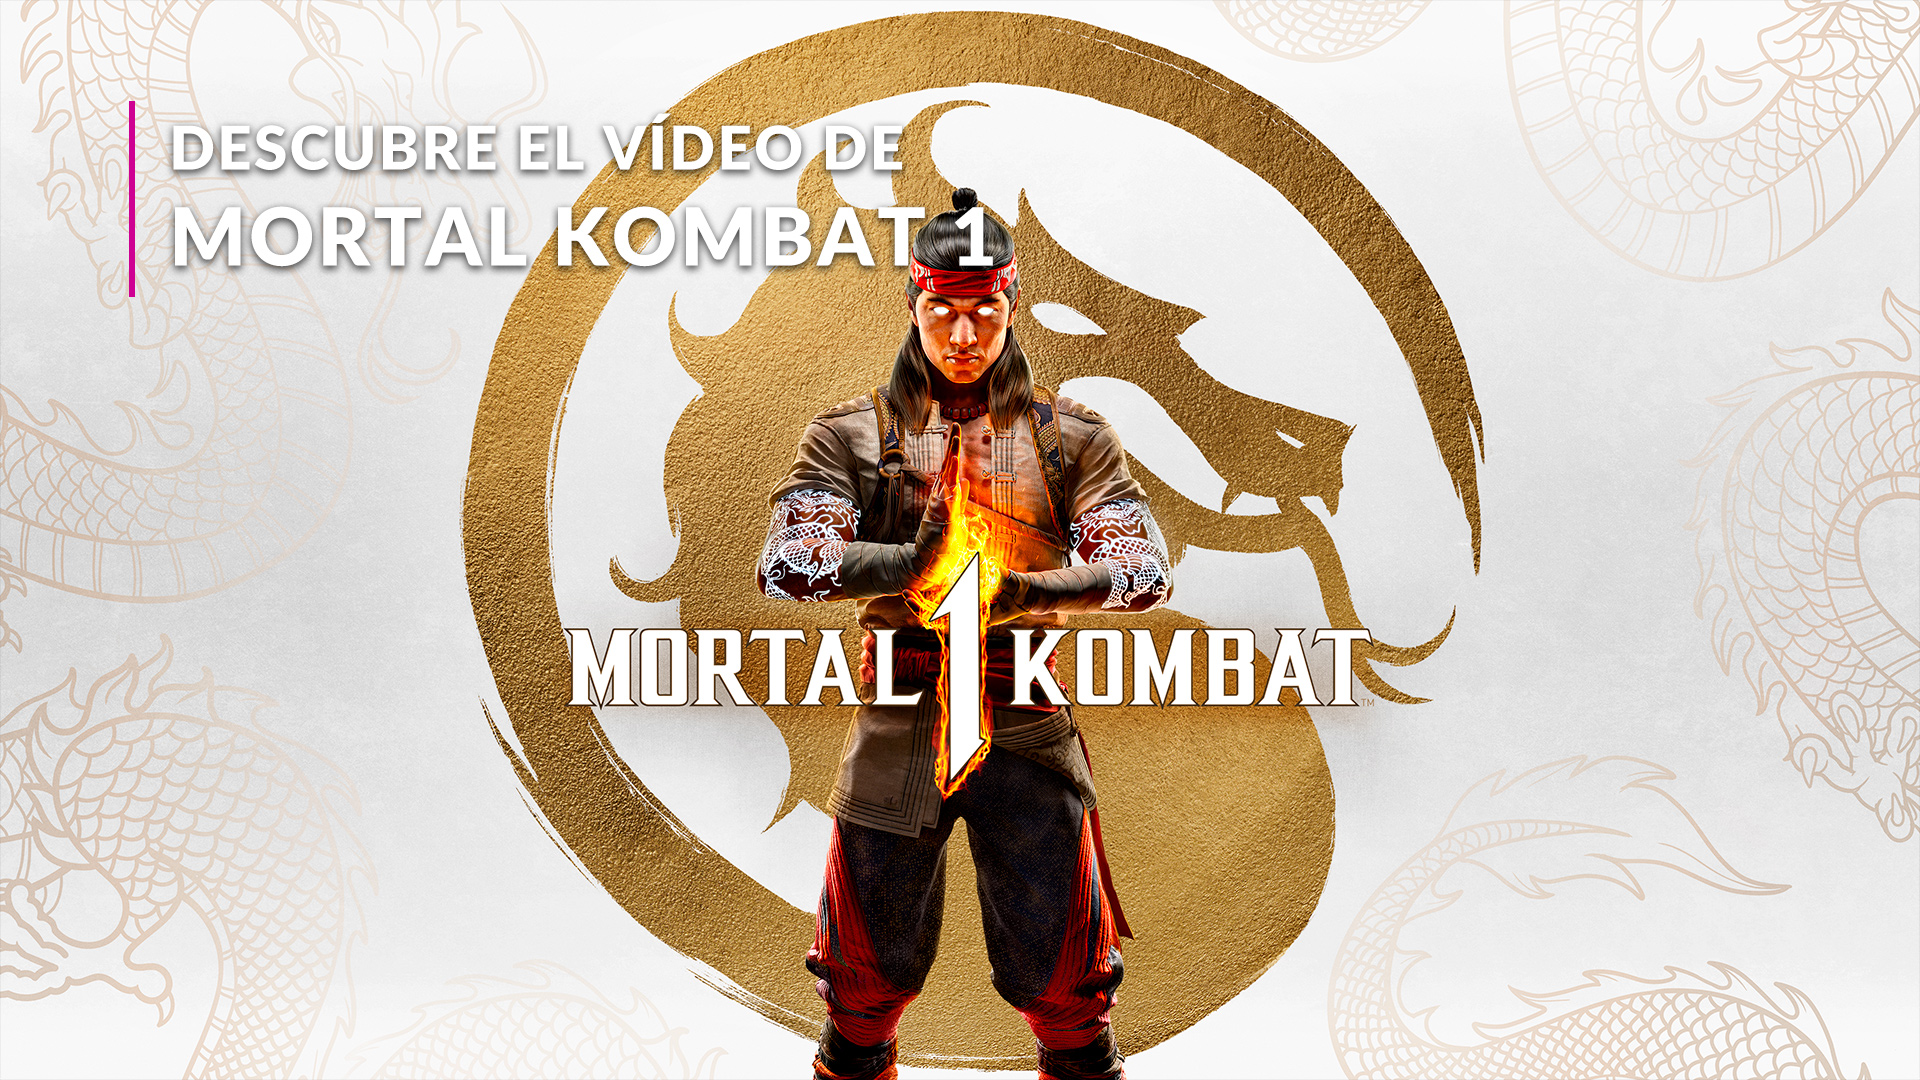 Mortal Kombat 1' ya se puede apartar en preventa, el nuevo juego de peleas  llegará en septiembre para PS5, Xbox Series y Nintendo Switch